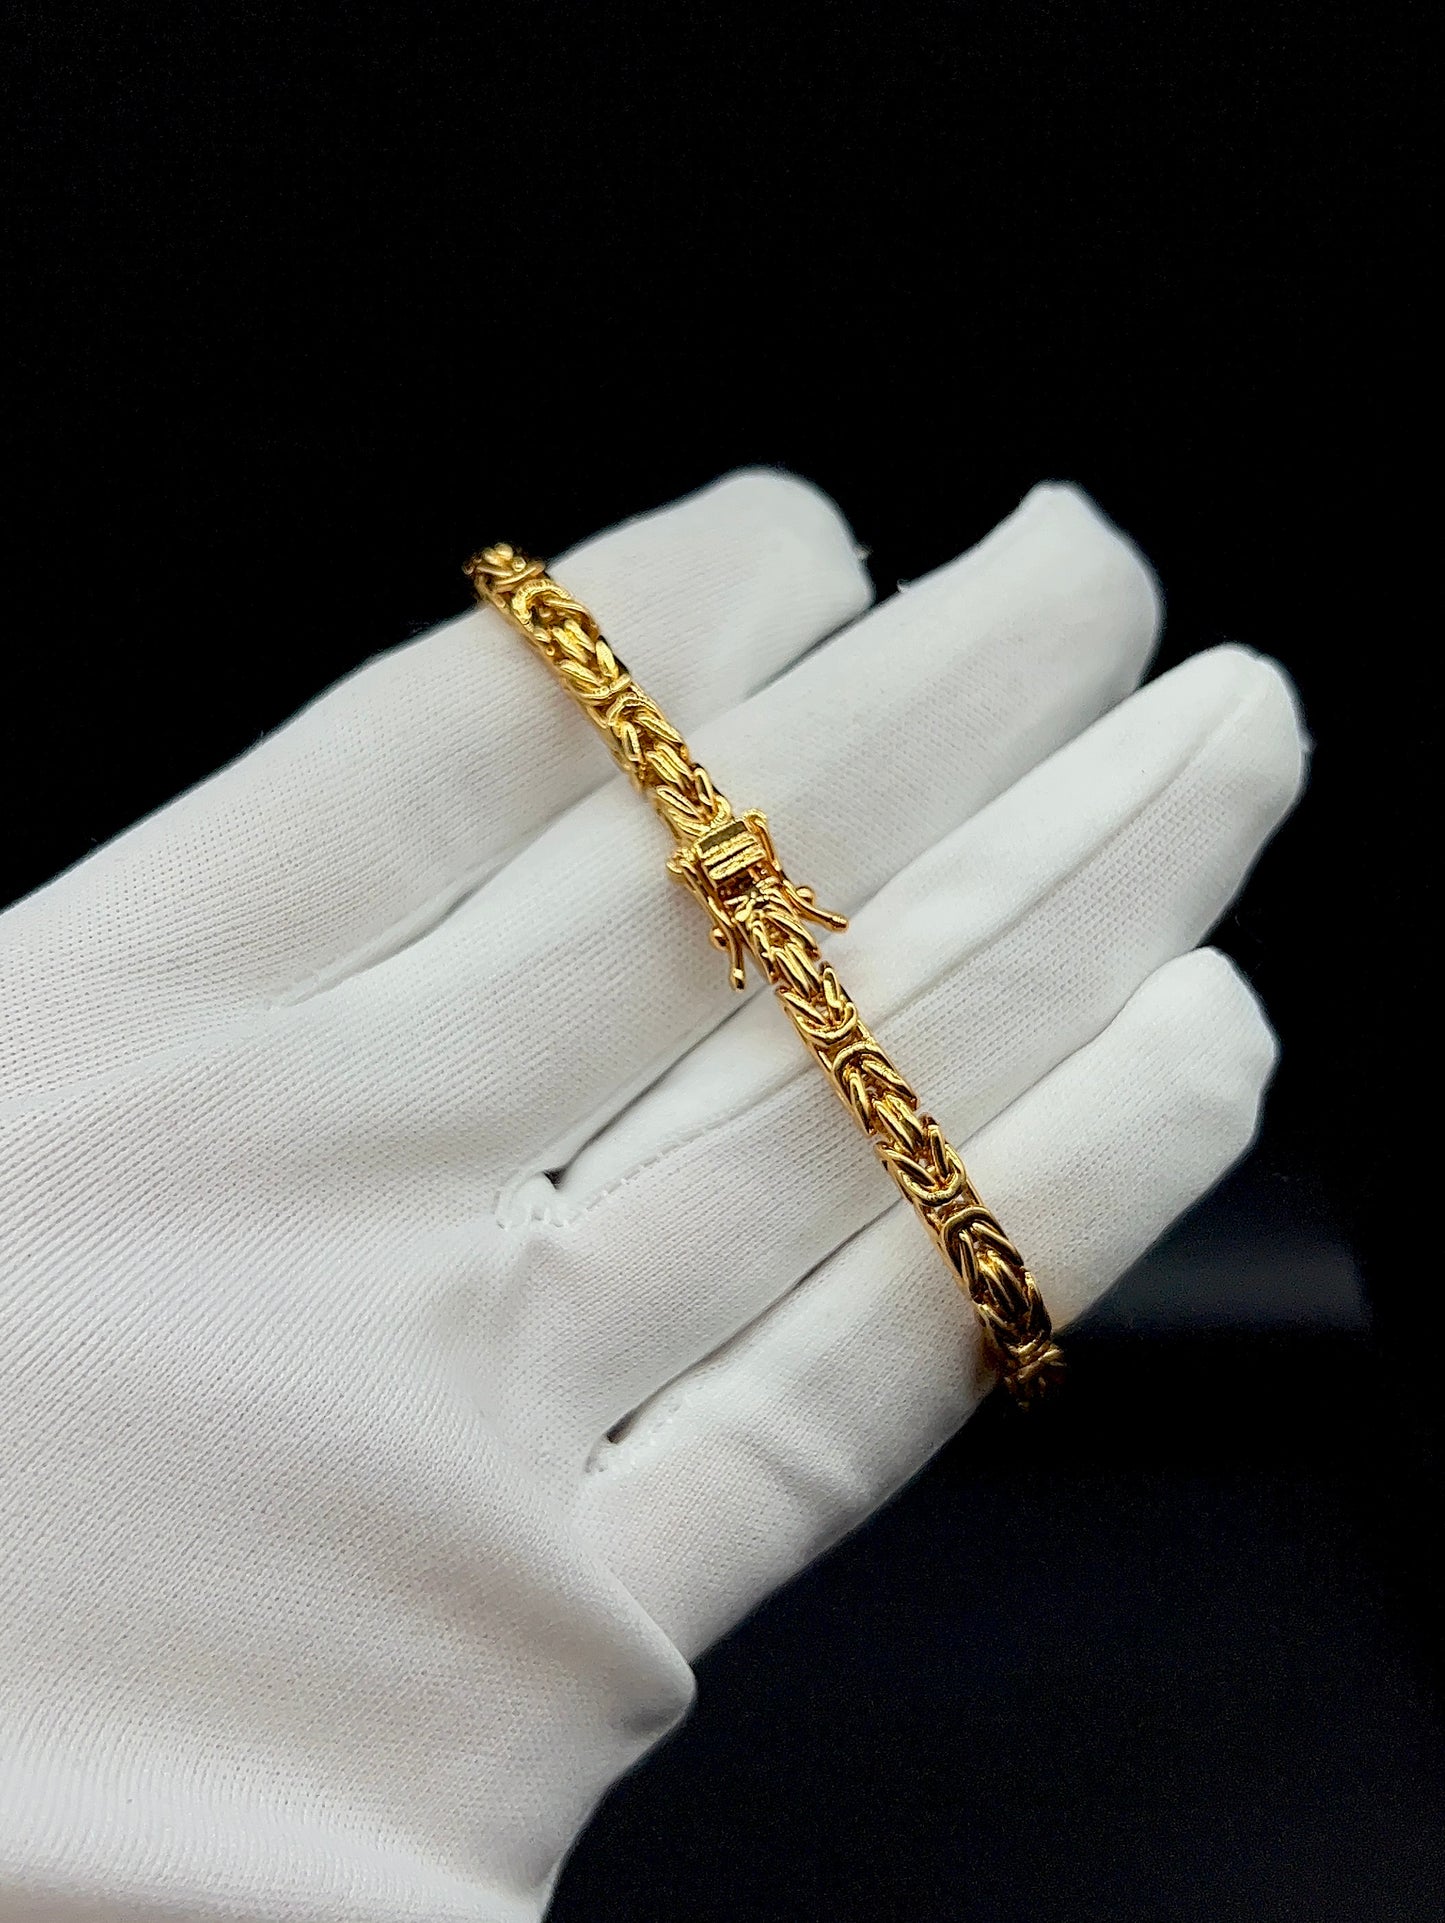 Byzantine Chain Bracelet 4mm - 18K Gold Plated